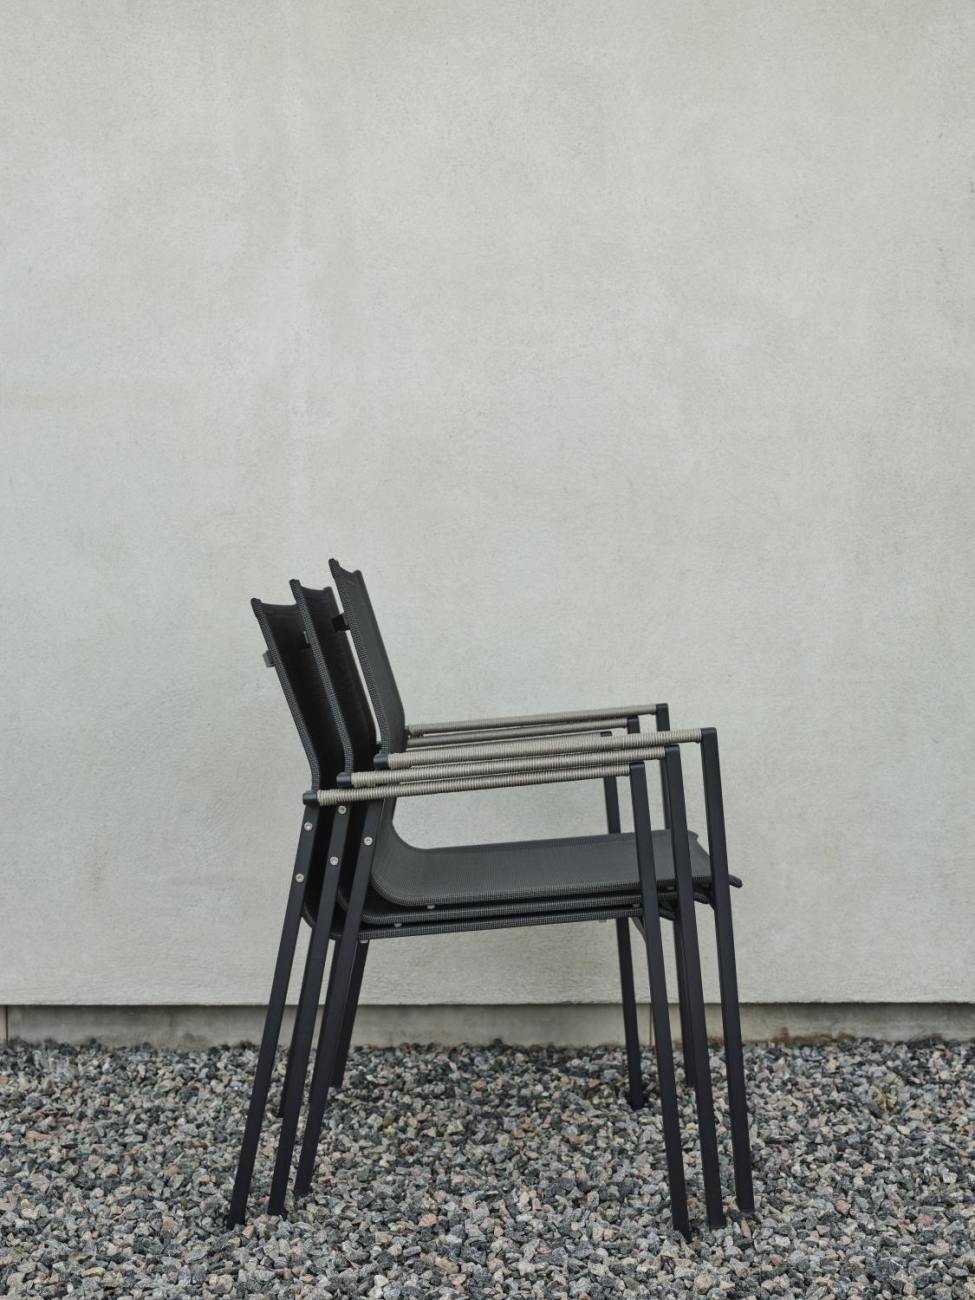 Der Gartenstuhl Lyra überzeugt mit seinem modernen Design. Gefertigt wurde er aus Textilene, welcher einen schwarzen Farbton besitzt. Das Gestell ist aus Metall und hat eine schwarze Farbe. Die Sitzhöhe des Stuhls beträgt 45 cm.